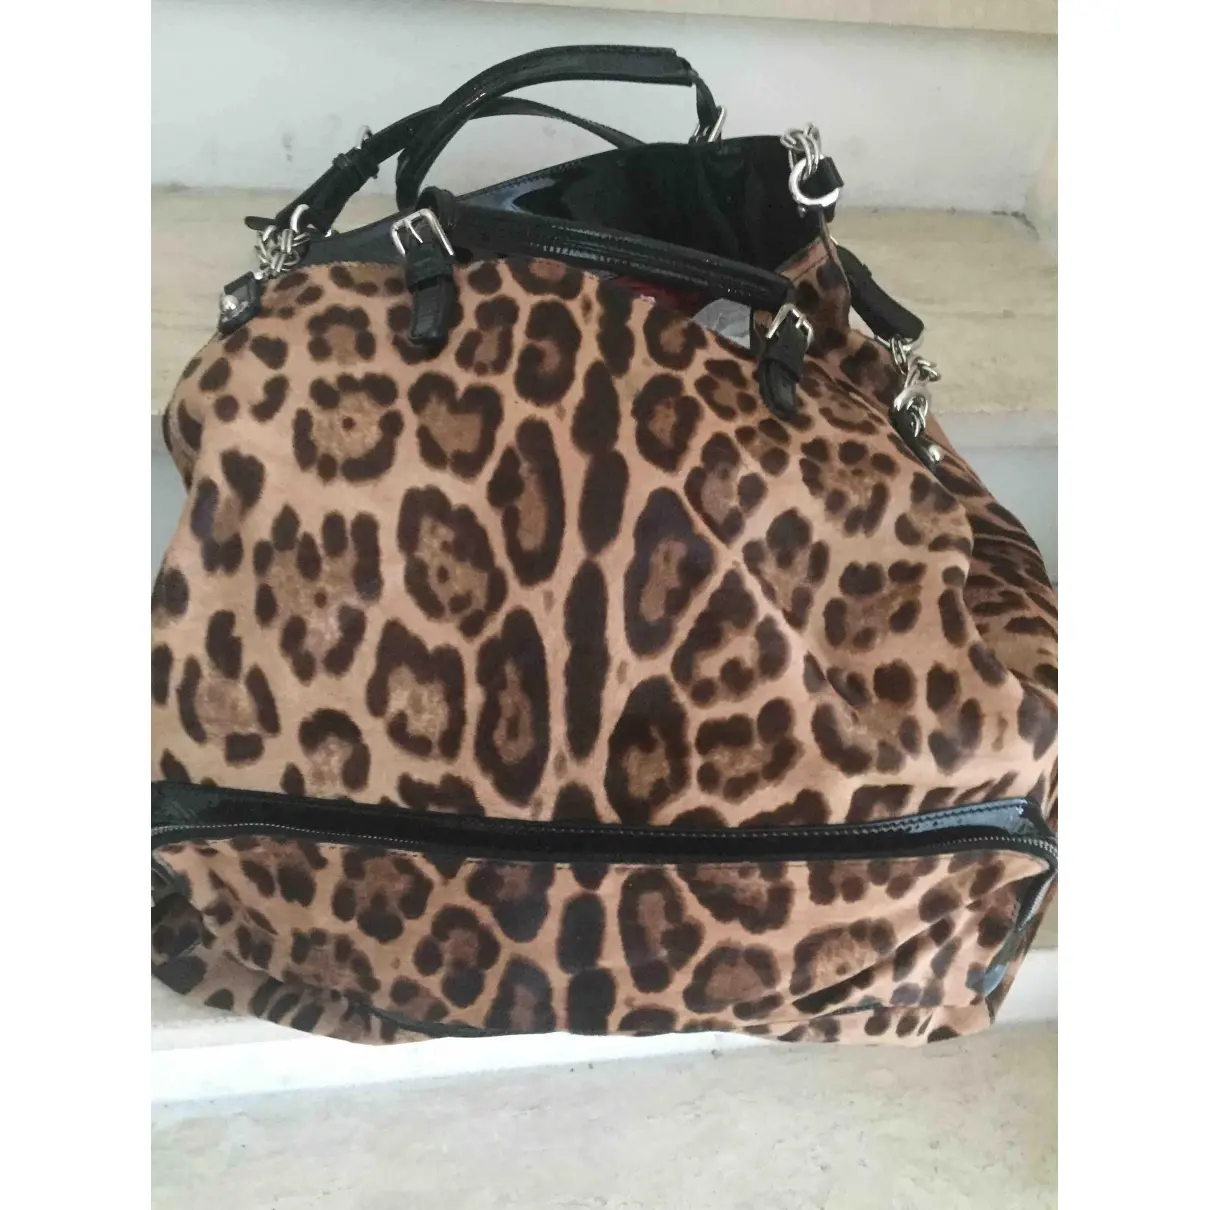 Pony-style calfskin handbag Dolce & Gabbana